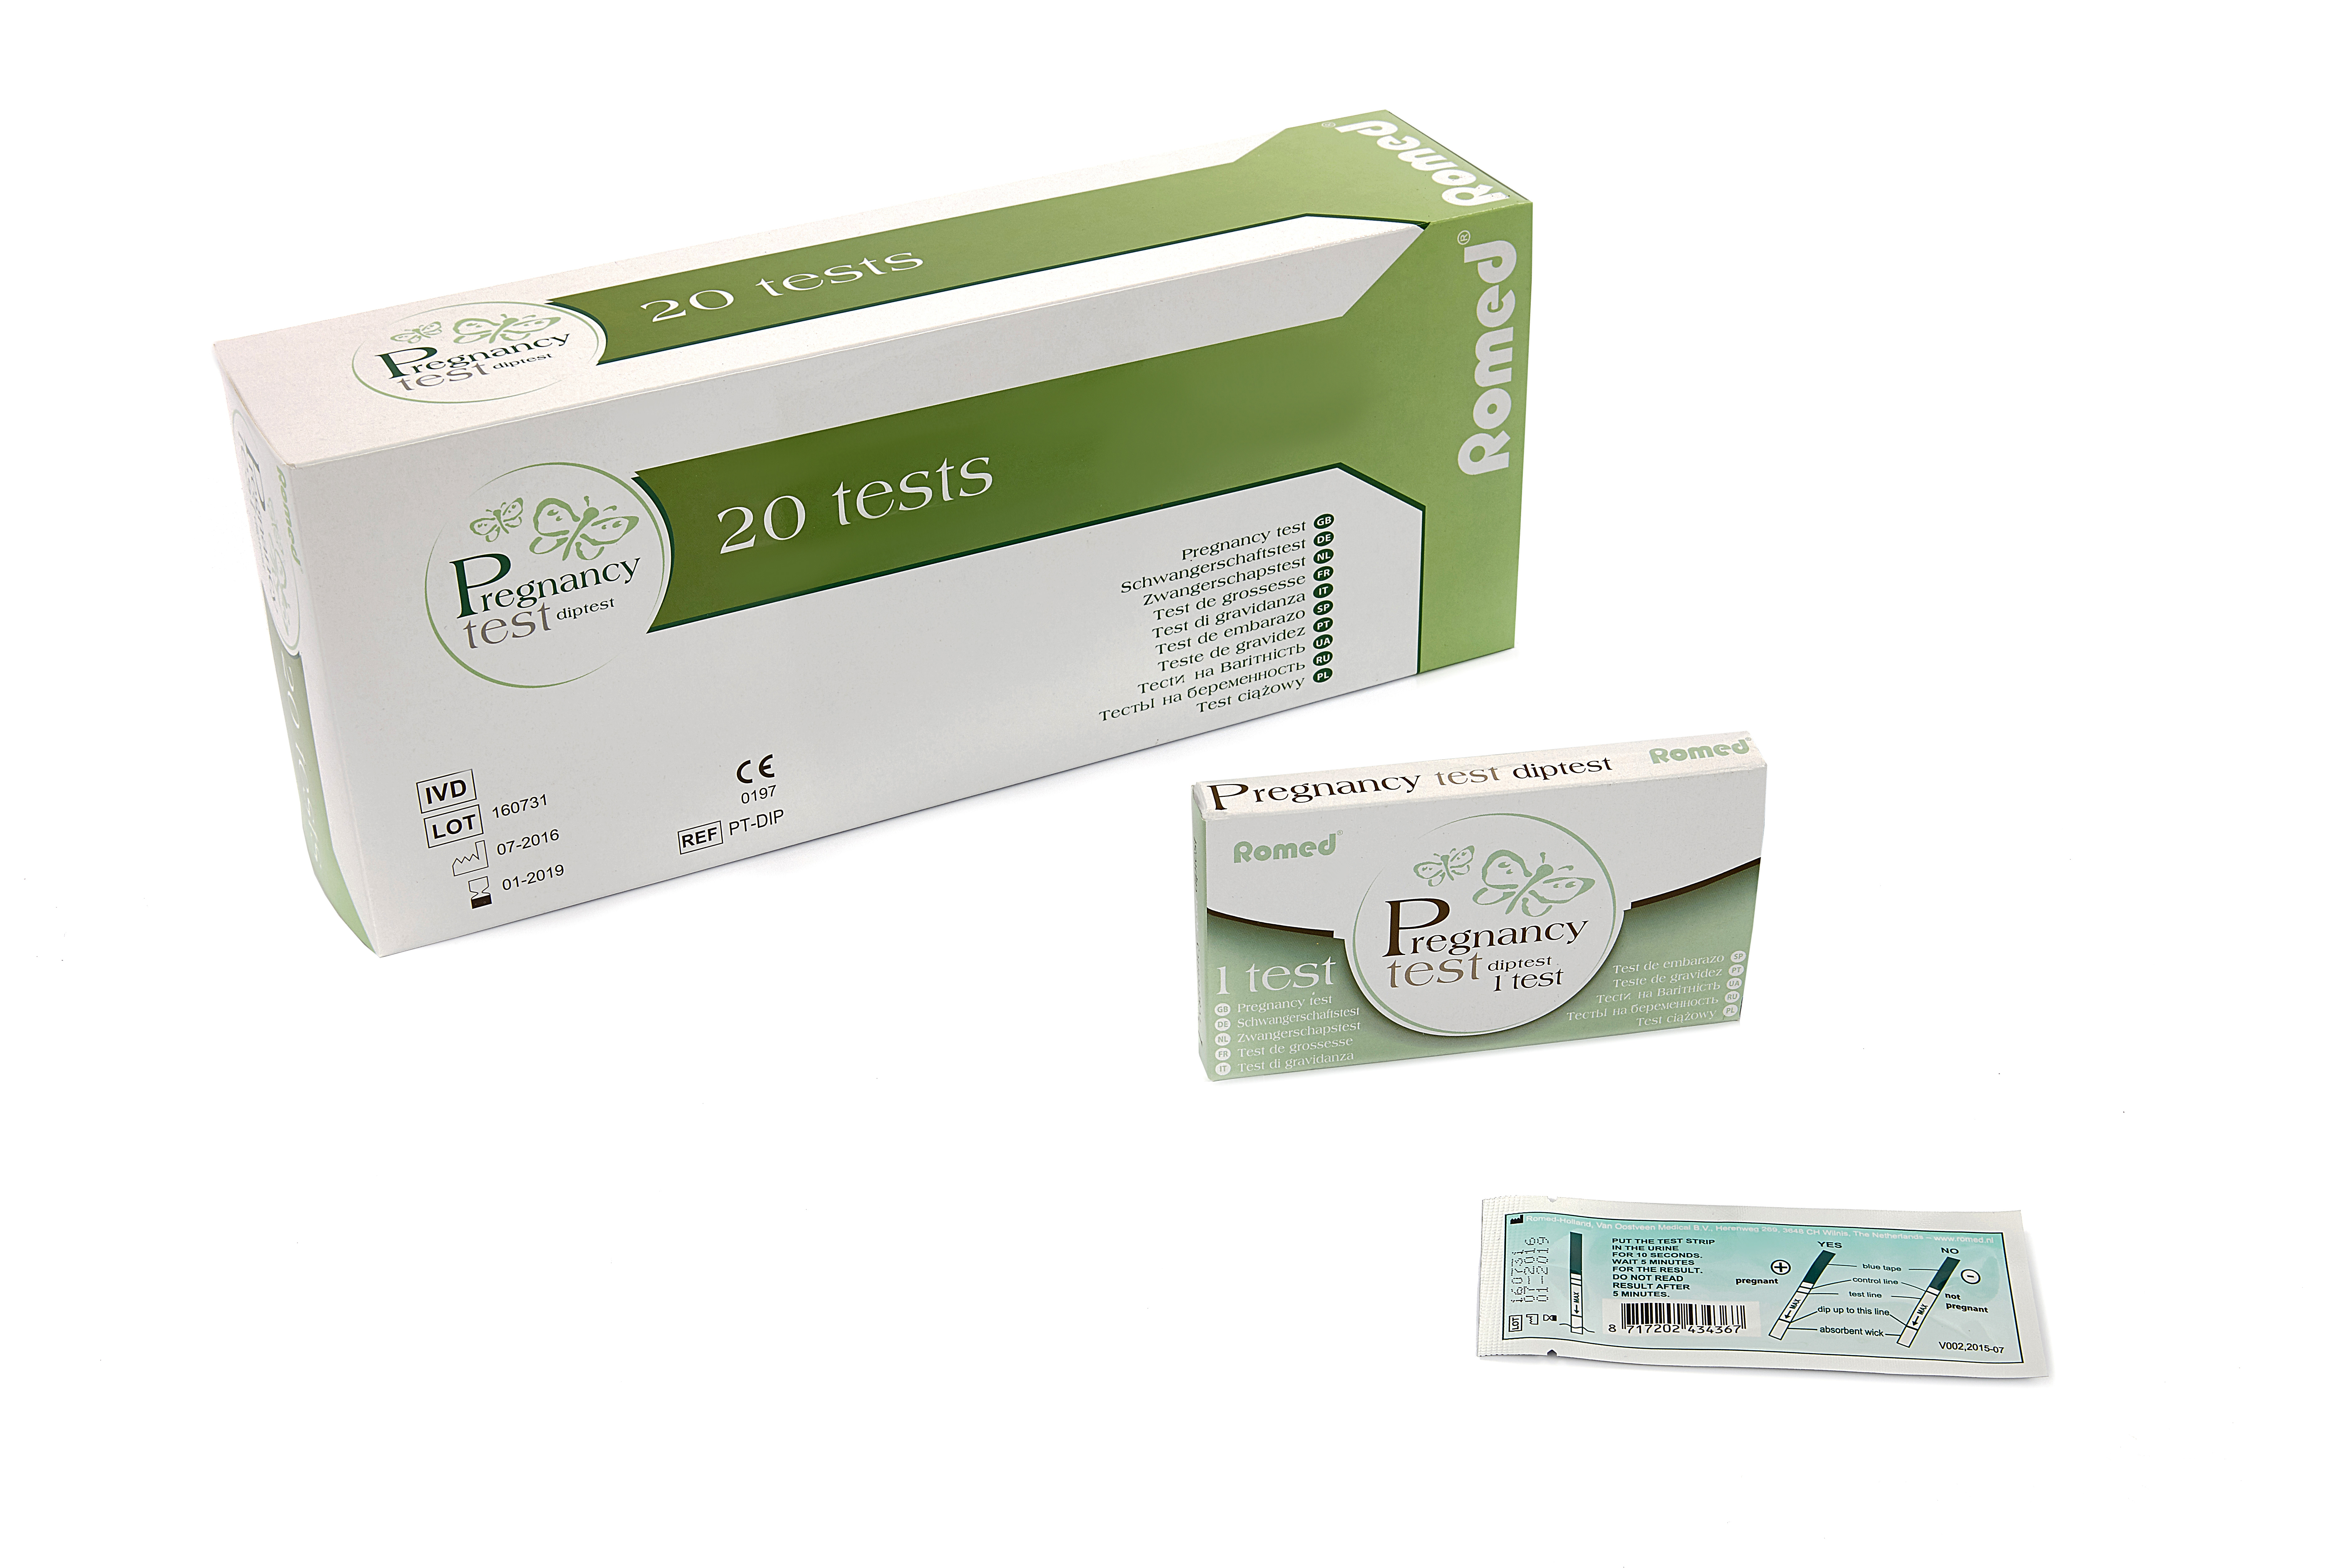 PT-DIP Romed zwangerschapstesten, diptest, verpakt per stuk in een doosje, per 20 stuks geseald in een binnendoosje, 25 x 20 stuks = 500 stuks in een karton.